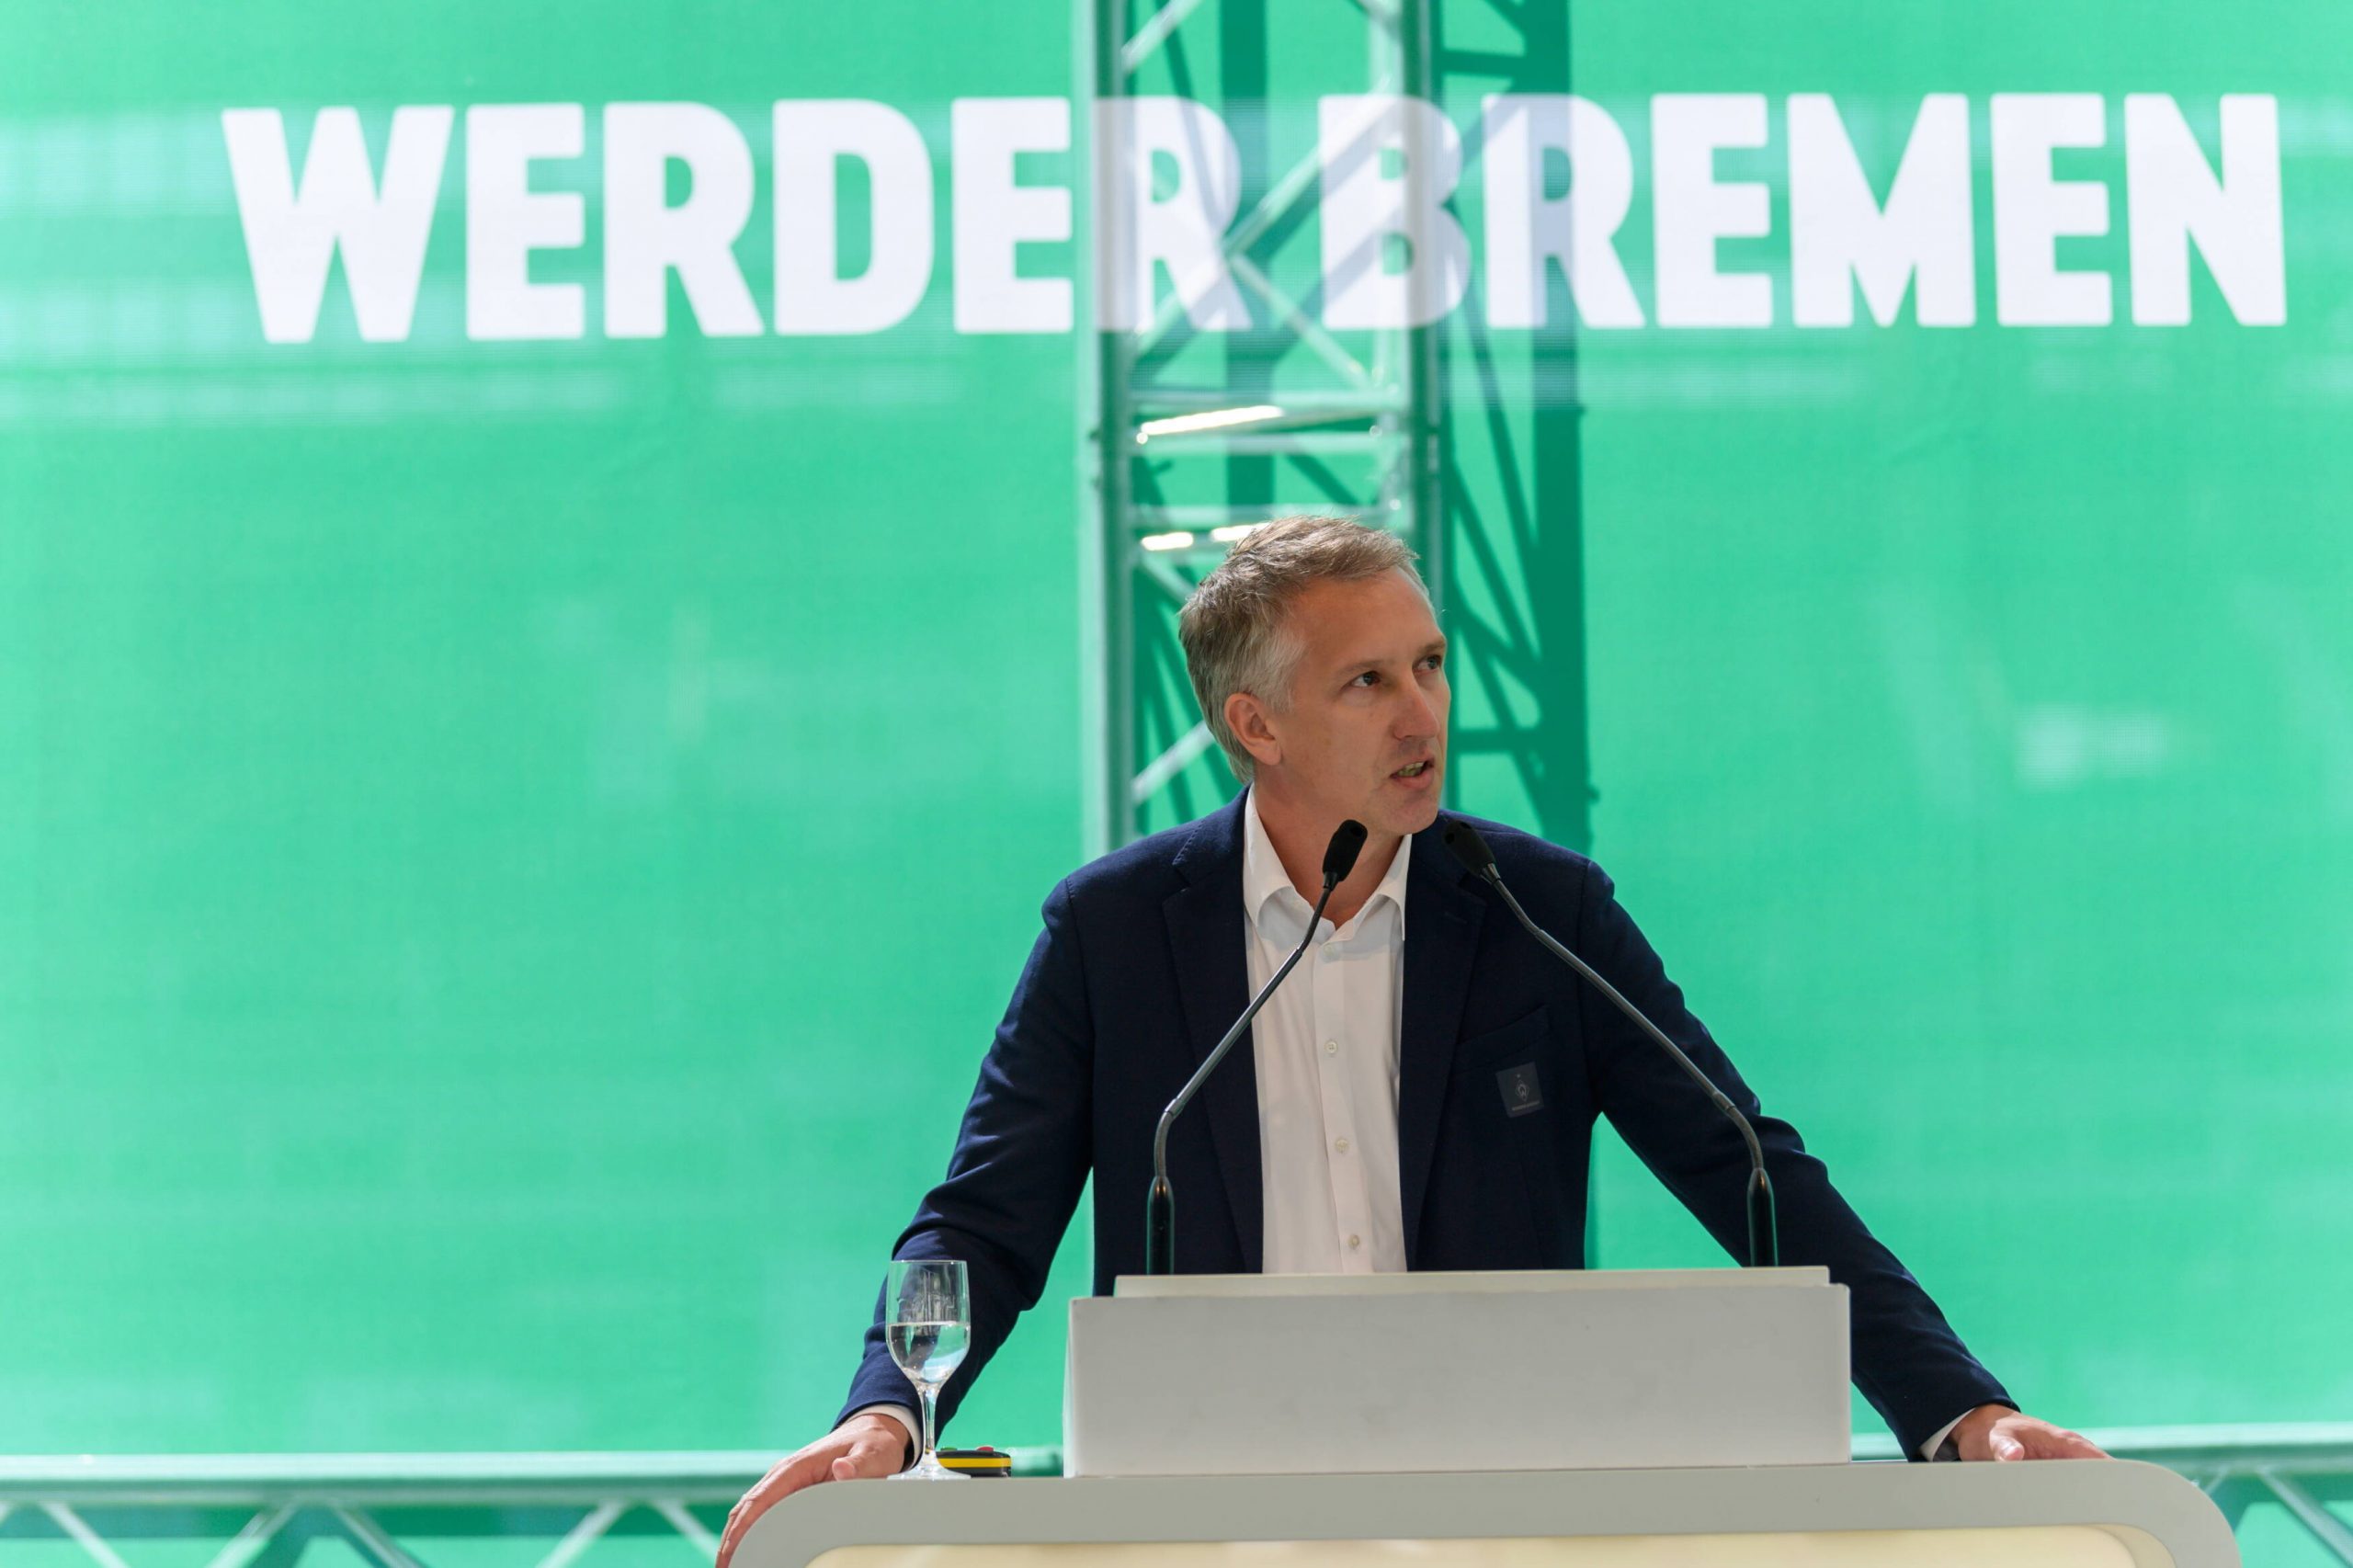 Geschäftsführer Frank Baumann will Werder Bremen nach dem Abstieg „in eine positive Zukunft lenken“